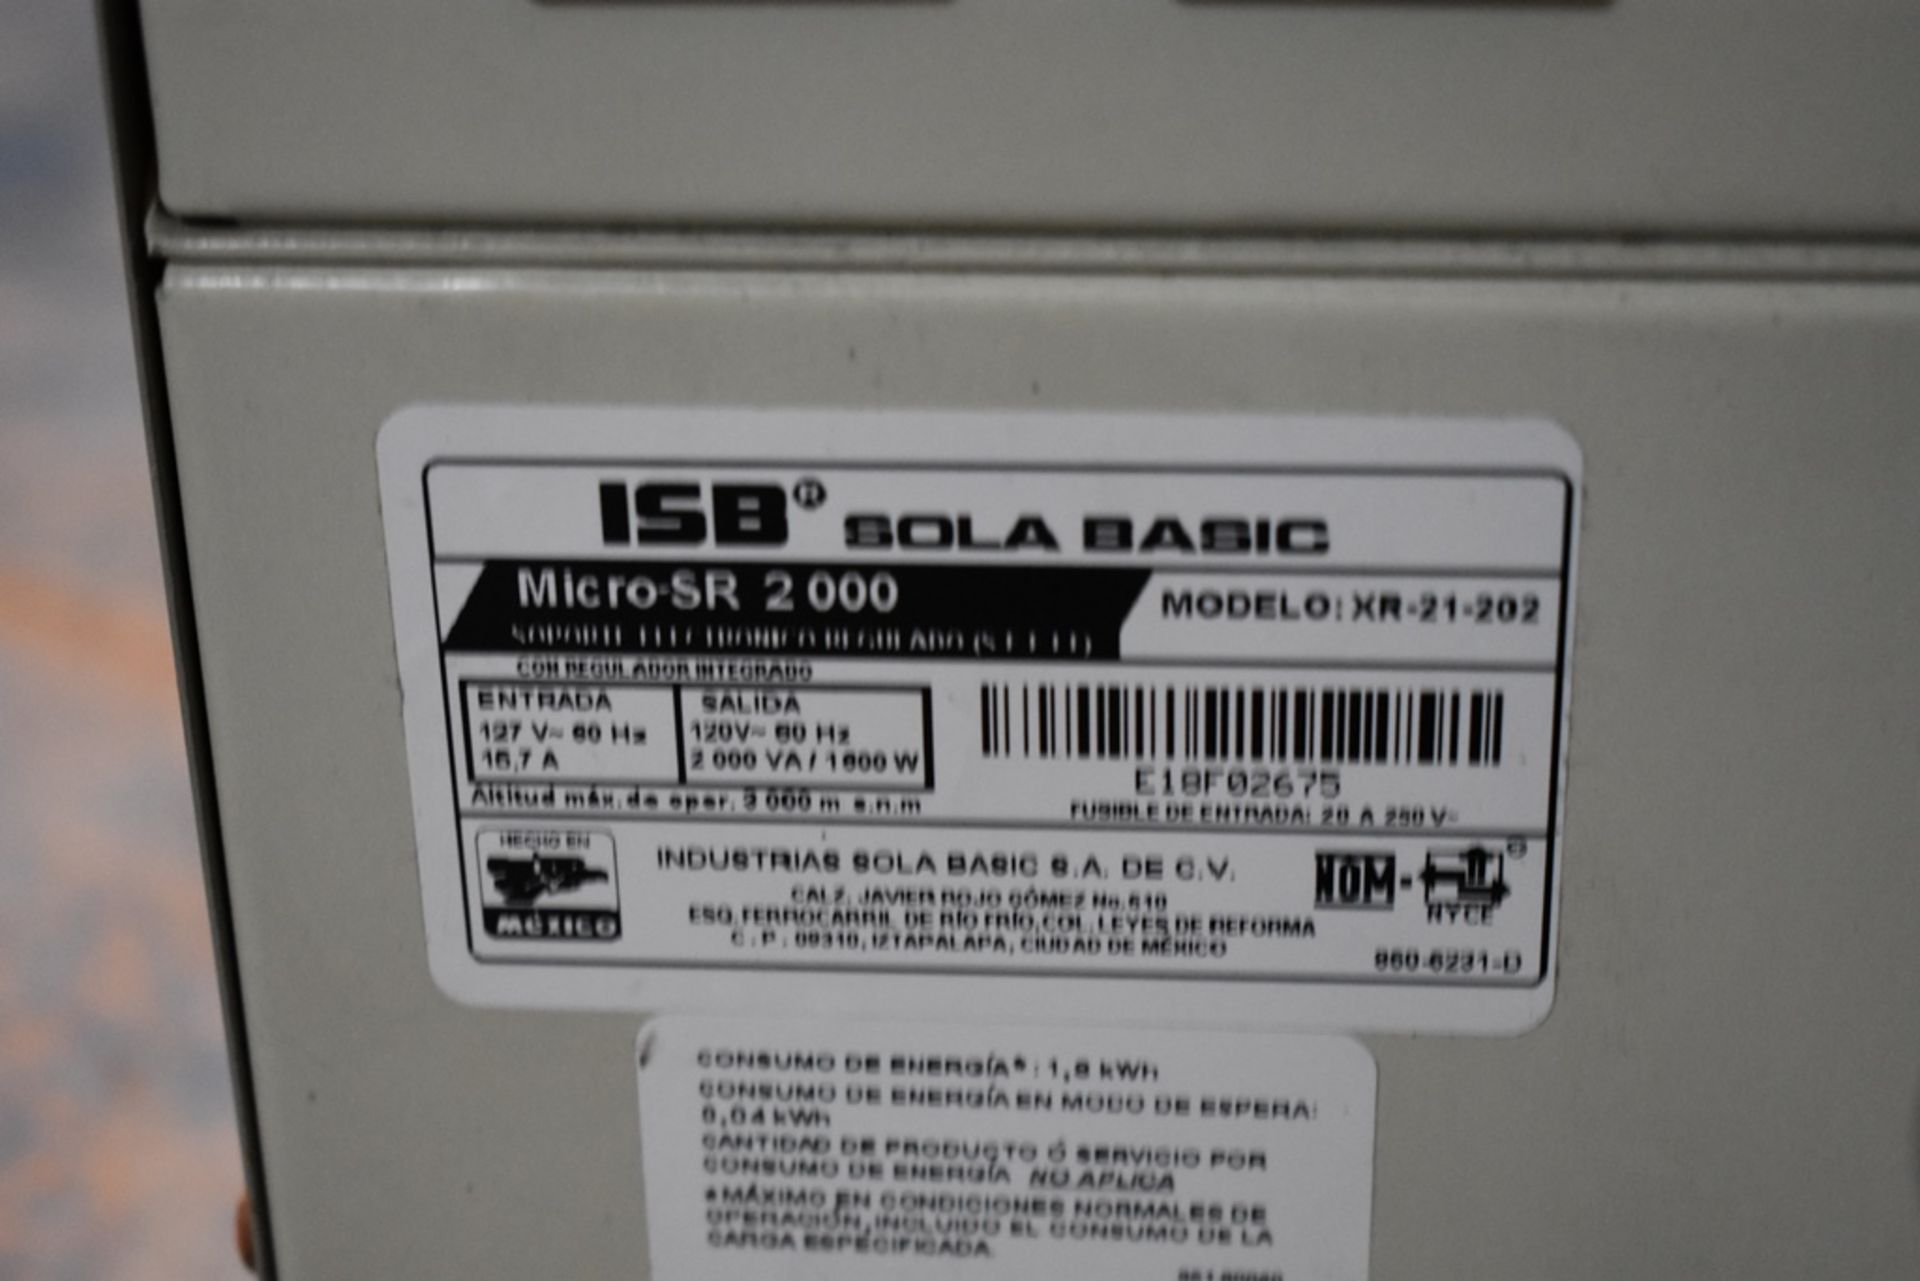 Dos reguladores de voltaje marca ISB Solabasic, modelo: XR-21-202, Series: E18F02675, E18H01516 - Image 9 of 17